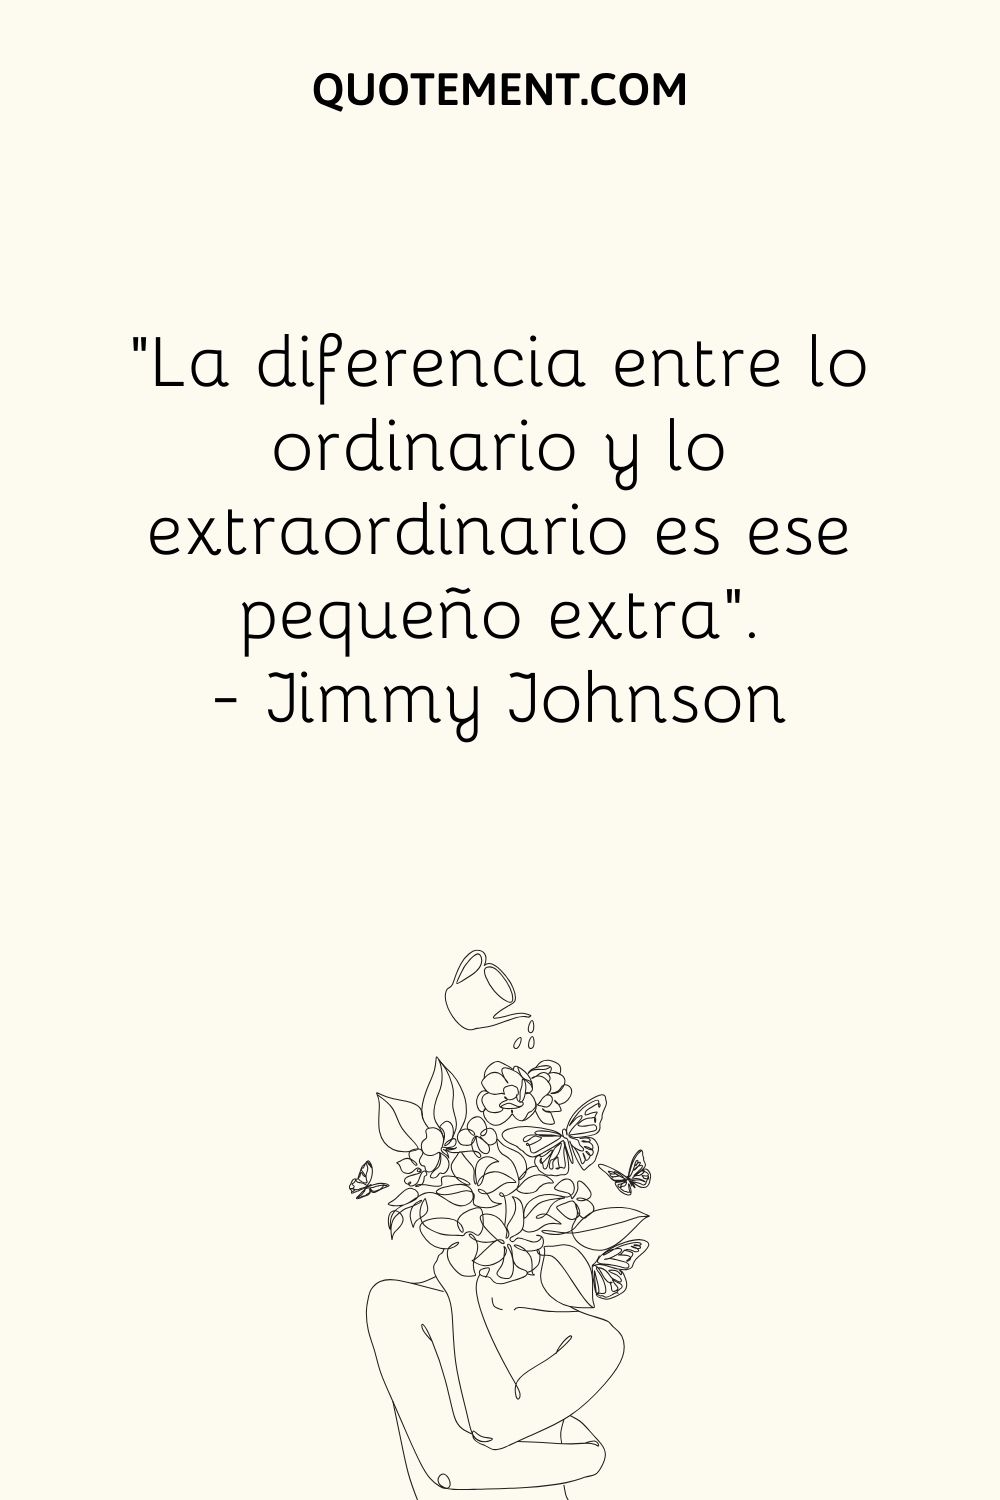 La diferencia entre lo ordinario y lo extraordinario es ese pequeño extra